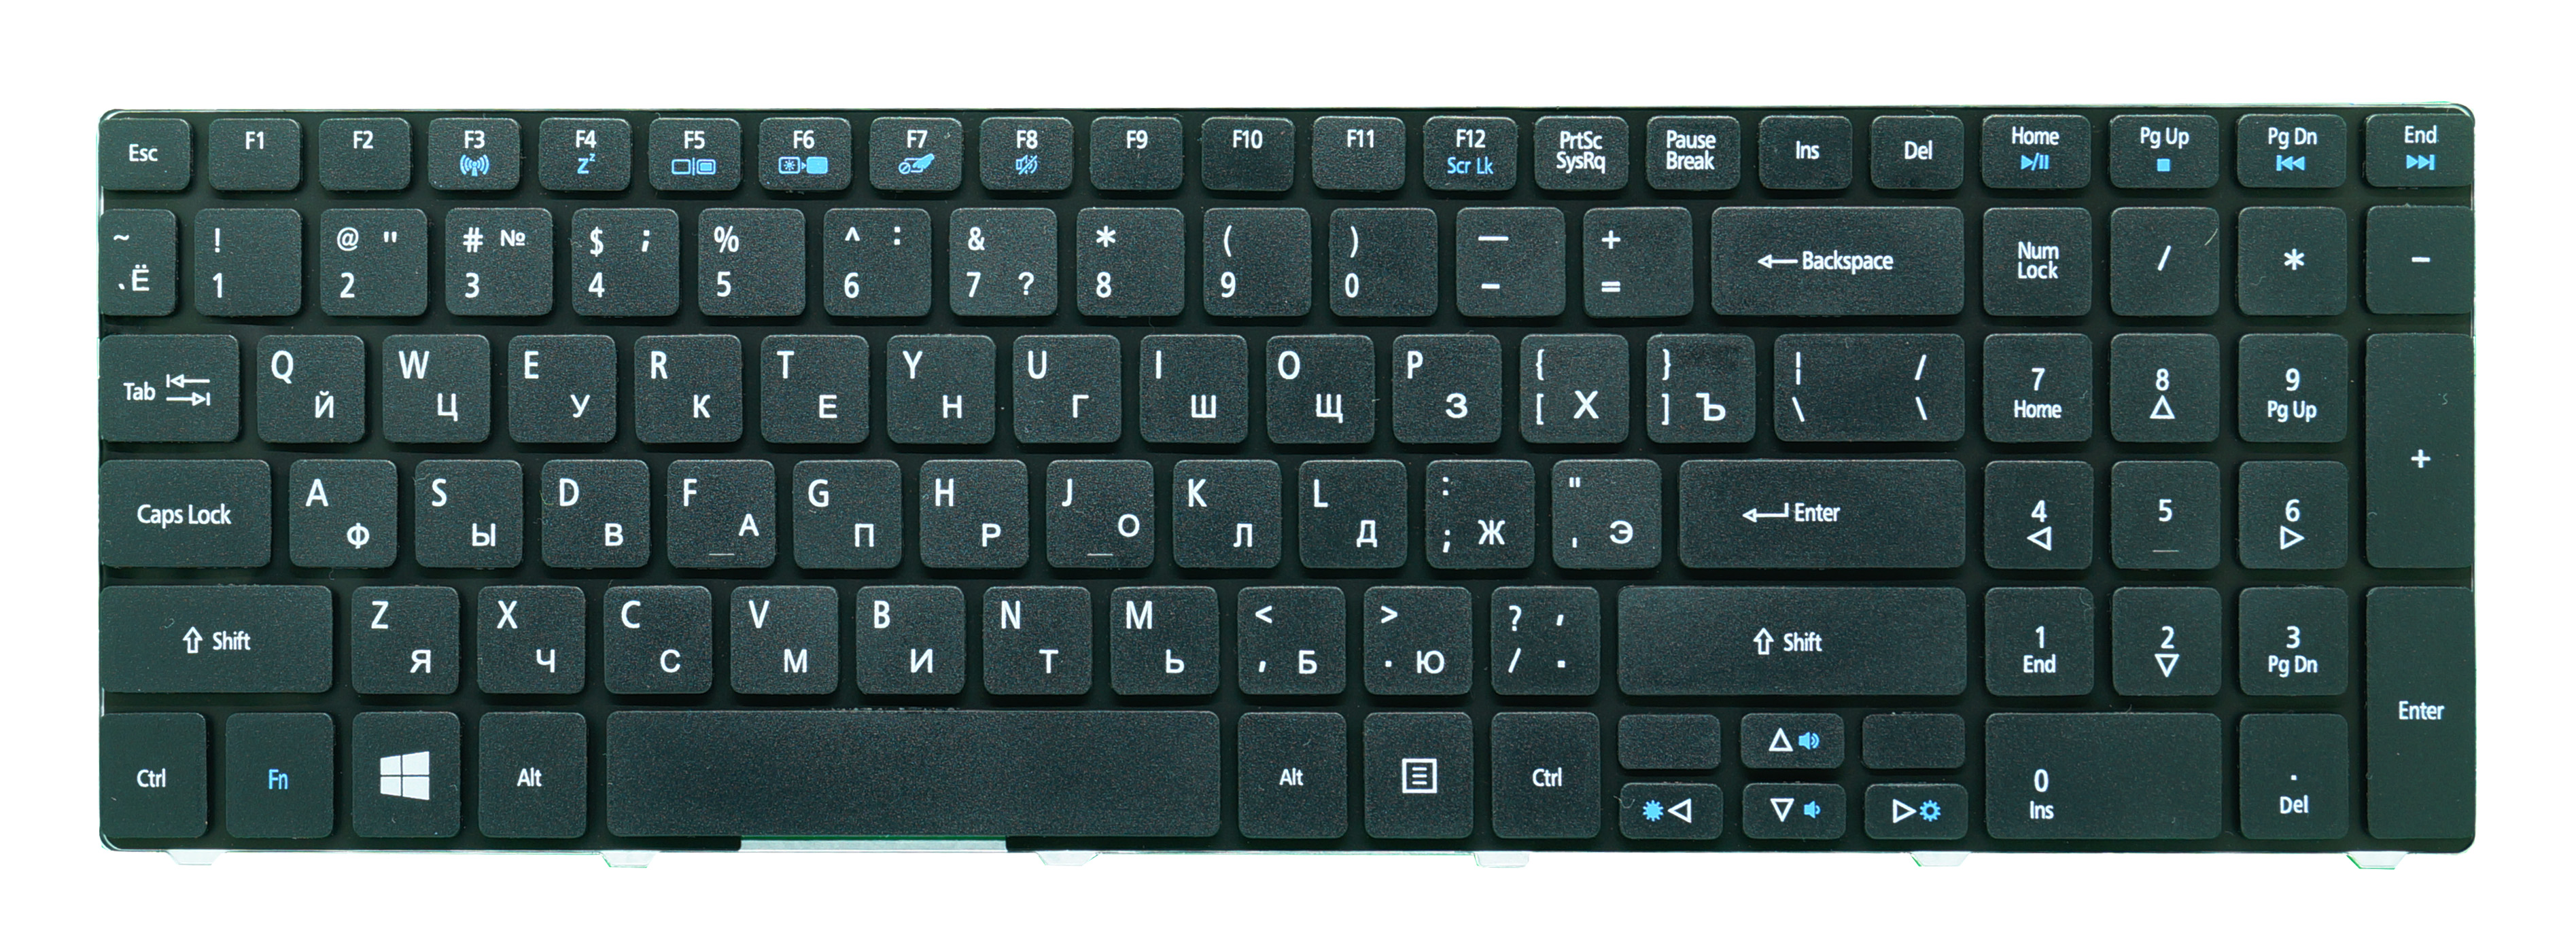 Клавиатура для ноутбука Acer Aspire 5810T черная